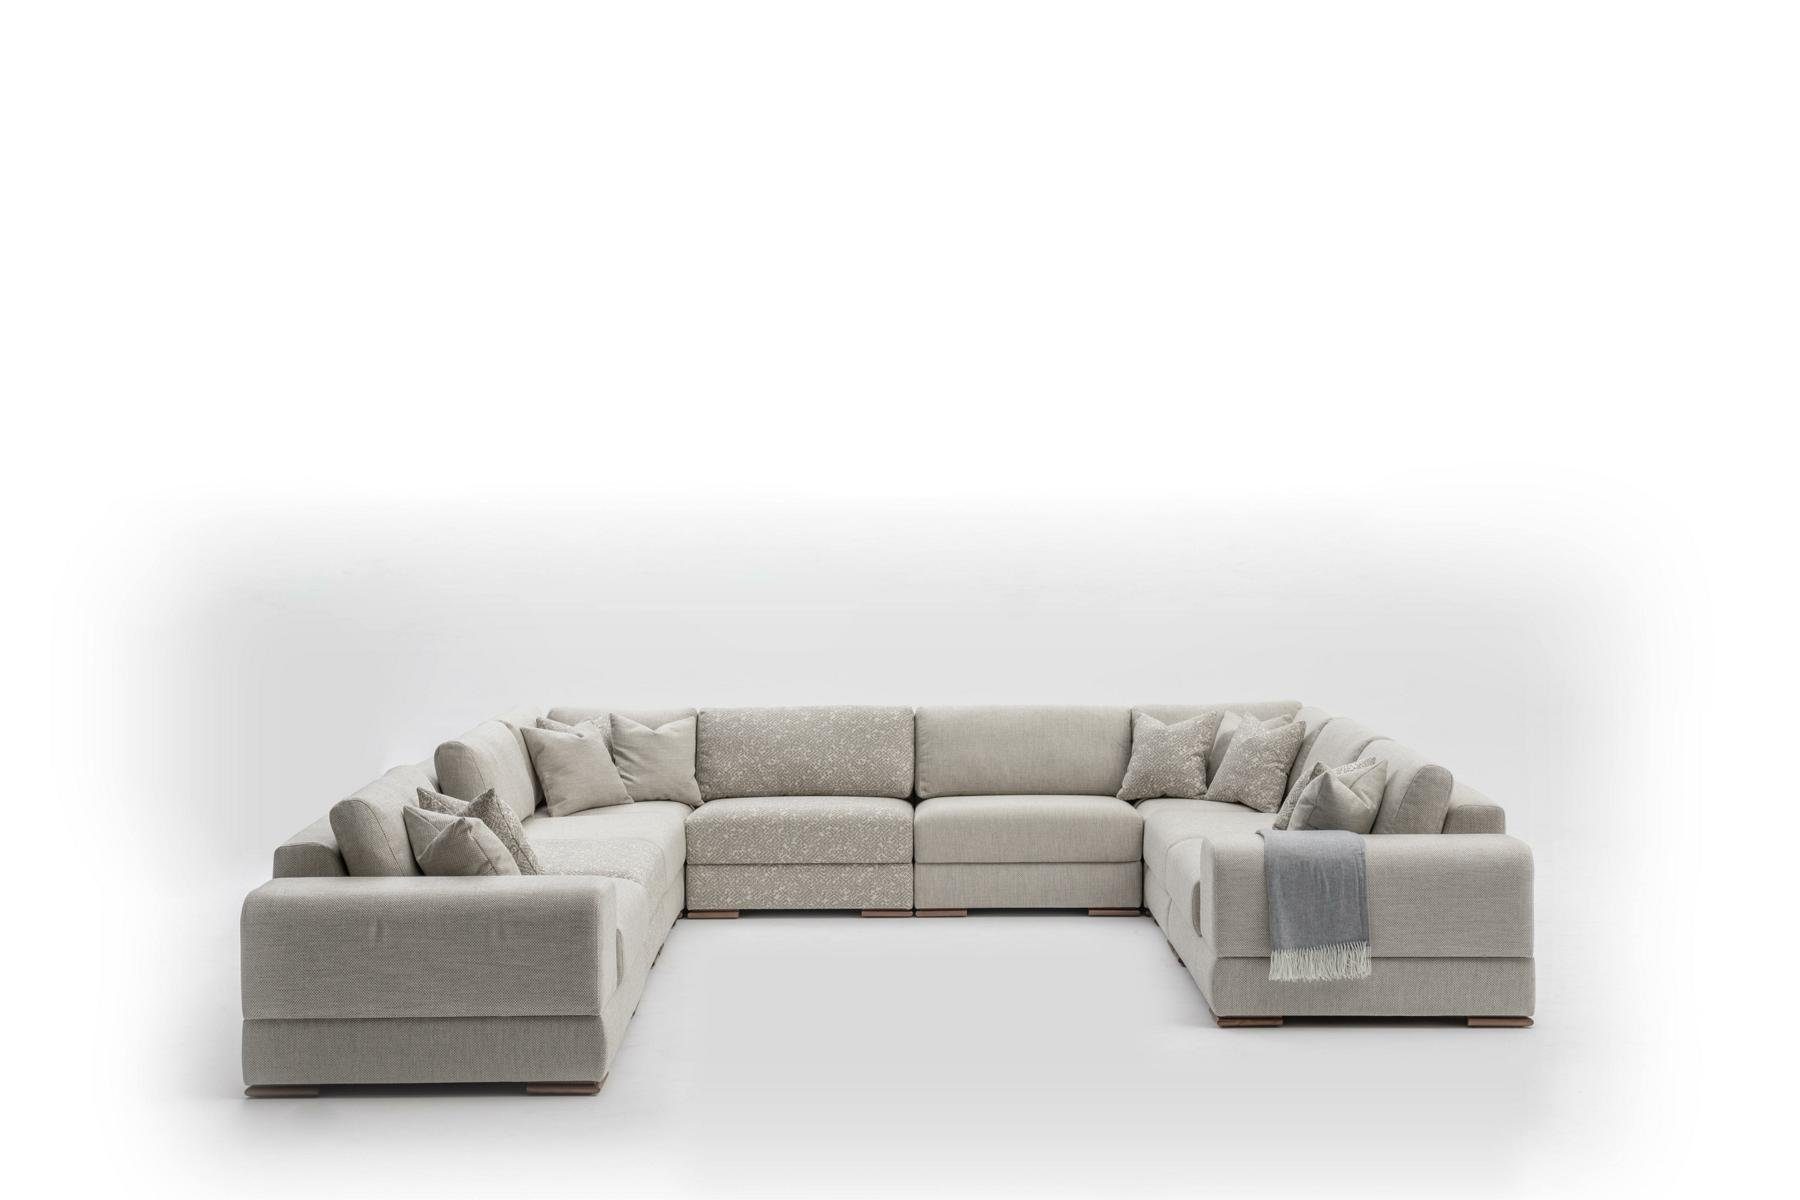 JVmoebel Ecksofa Luxus Sofa Made Europe in Design U-Form Möbel Ecksofa Wohnlandschaft